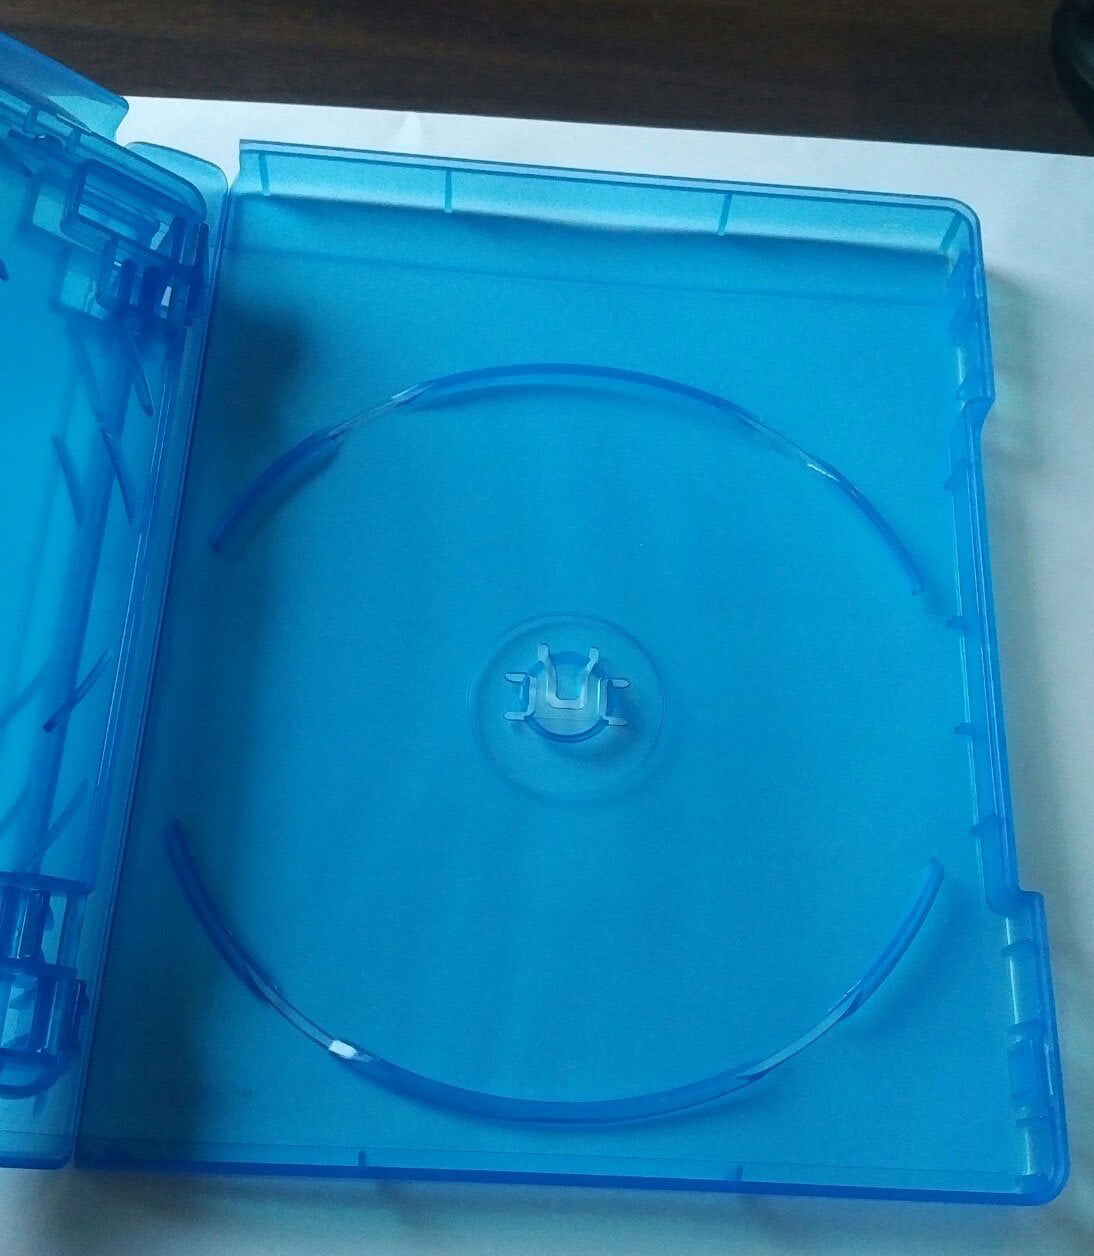 Holds 2 Discs 5 Premium VIVA ELITE Double Disc Blu-ray Cases NEW 